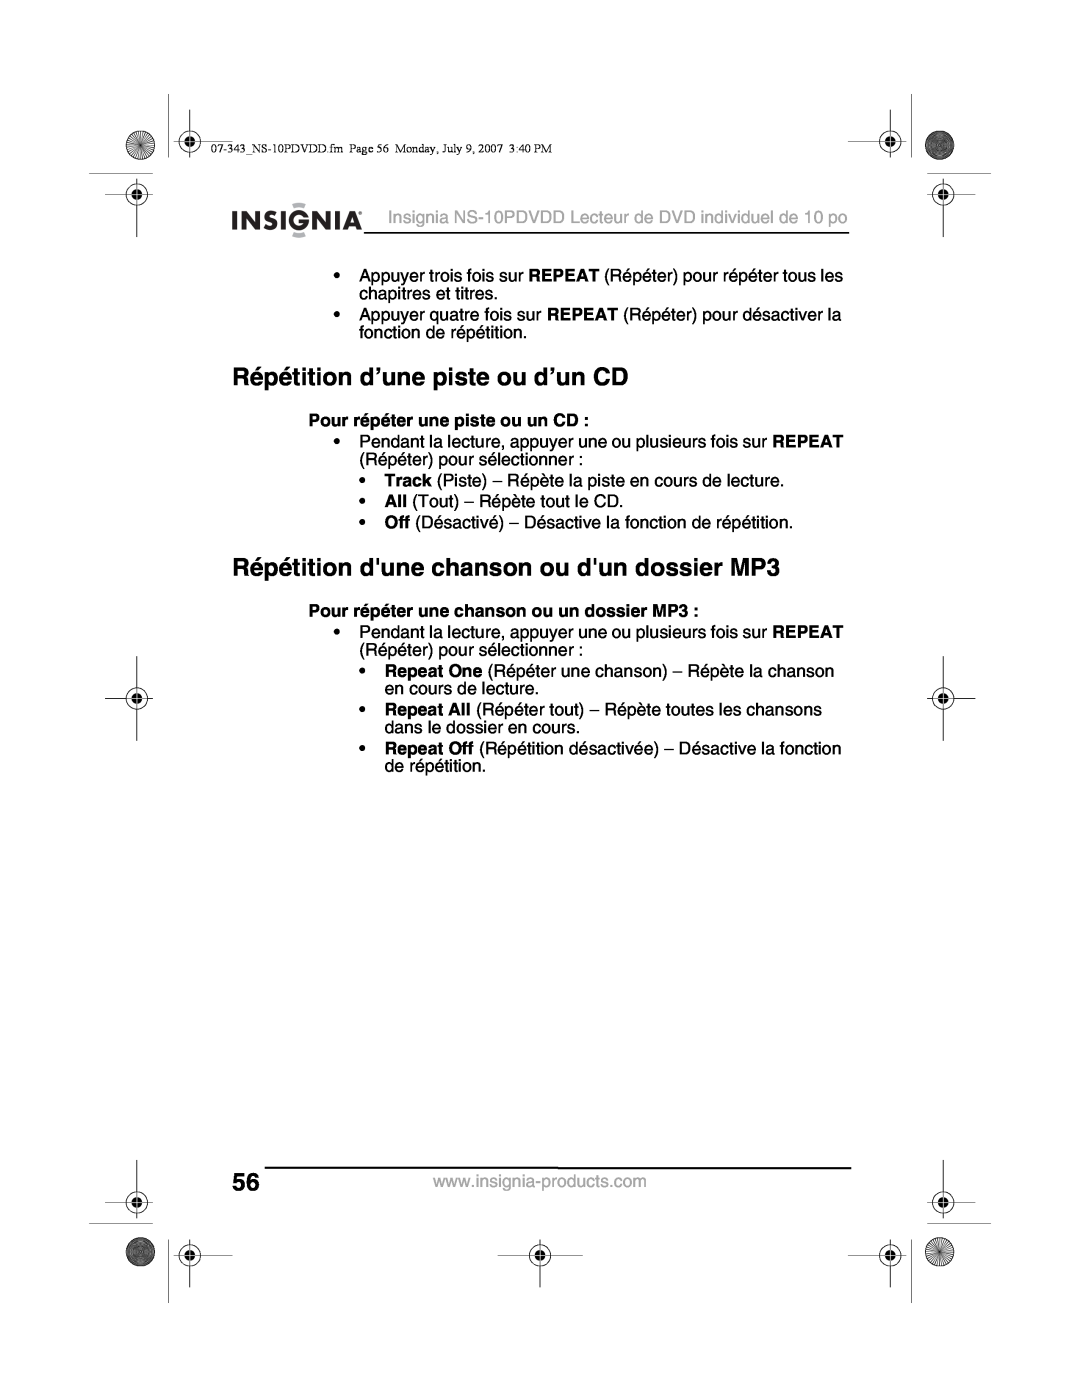 Insignia NS-10PDVDD manual Répétition d’une piste ou d’un CD, Répétition dune chanson ou dun dossier MP3 